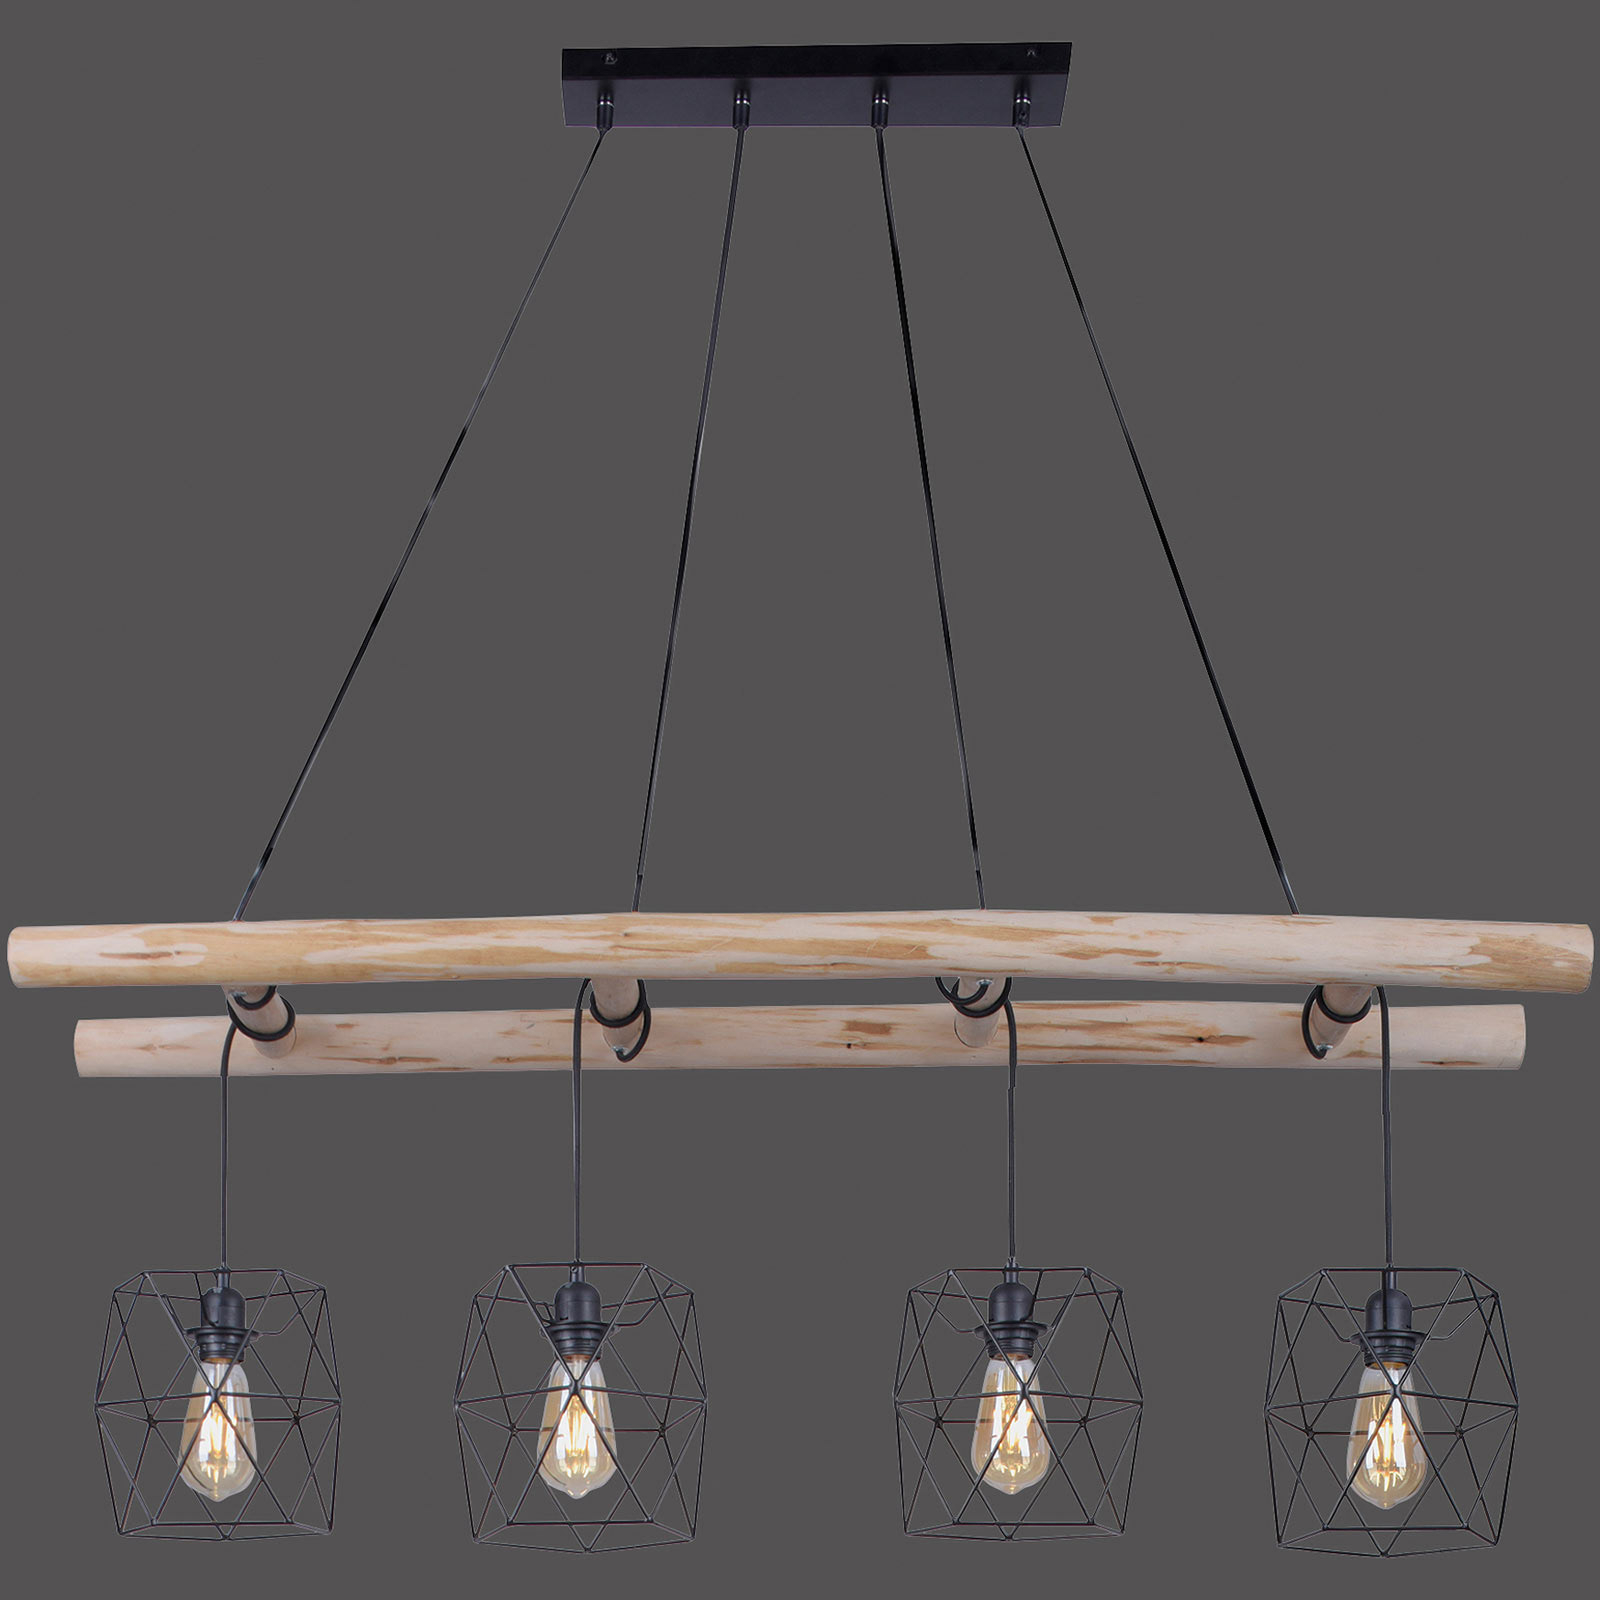 Lesena viseča svetilka Edgar, senčilo v obliki kletke s štirimi lučmi